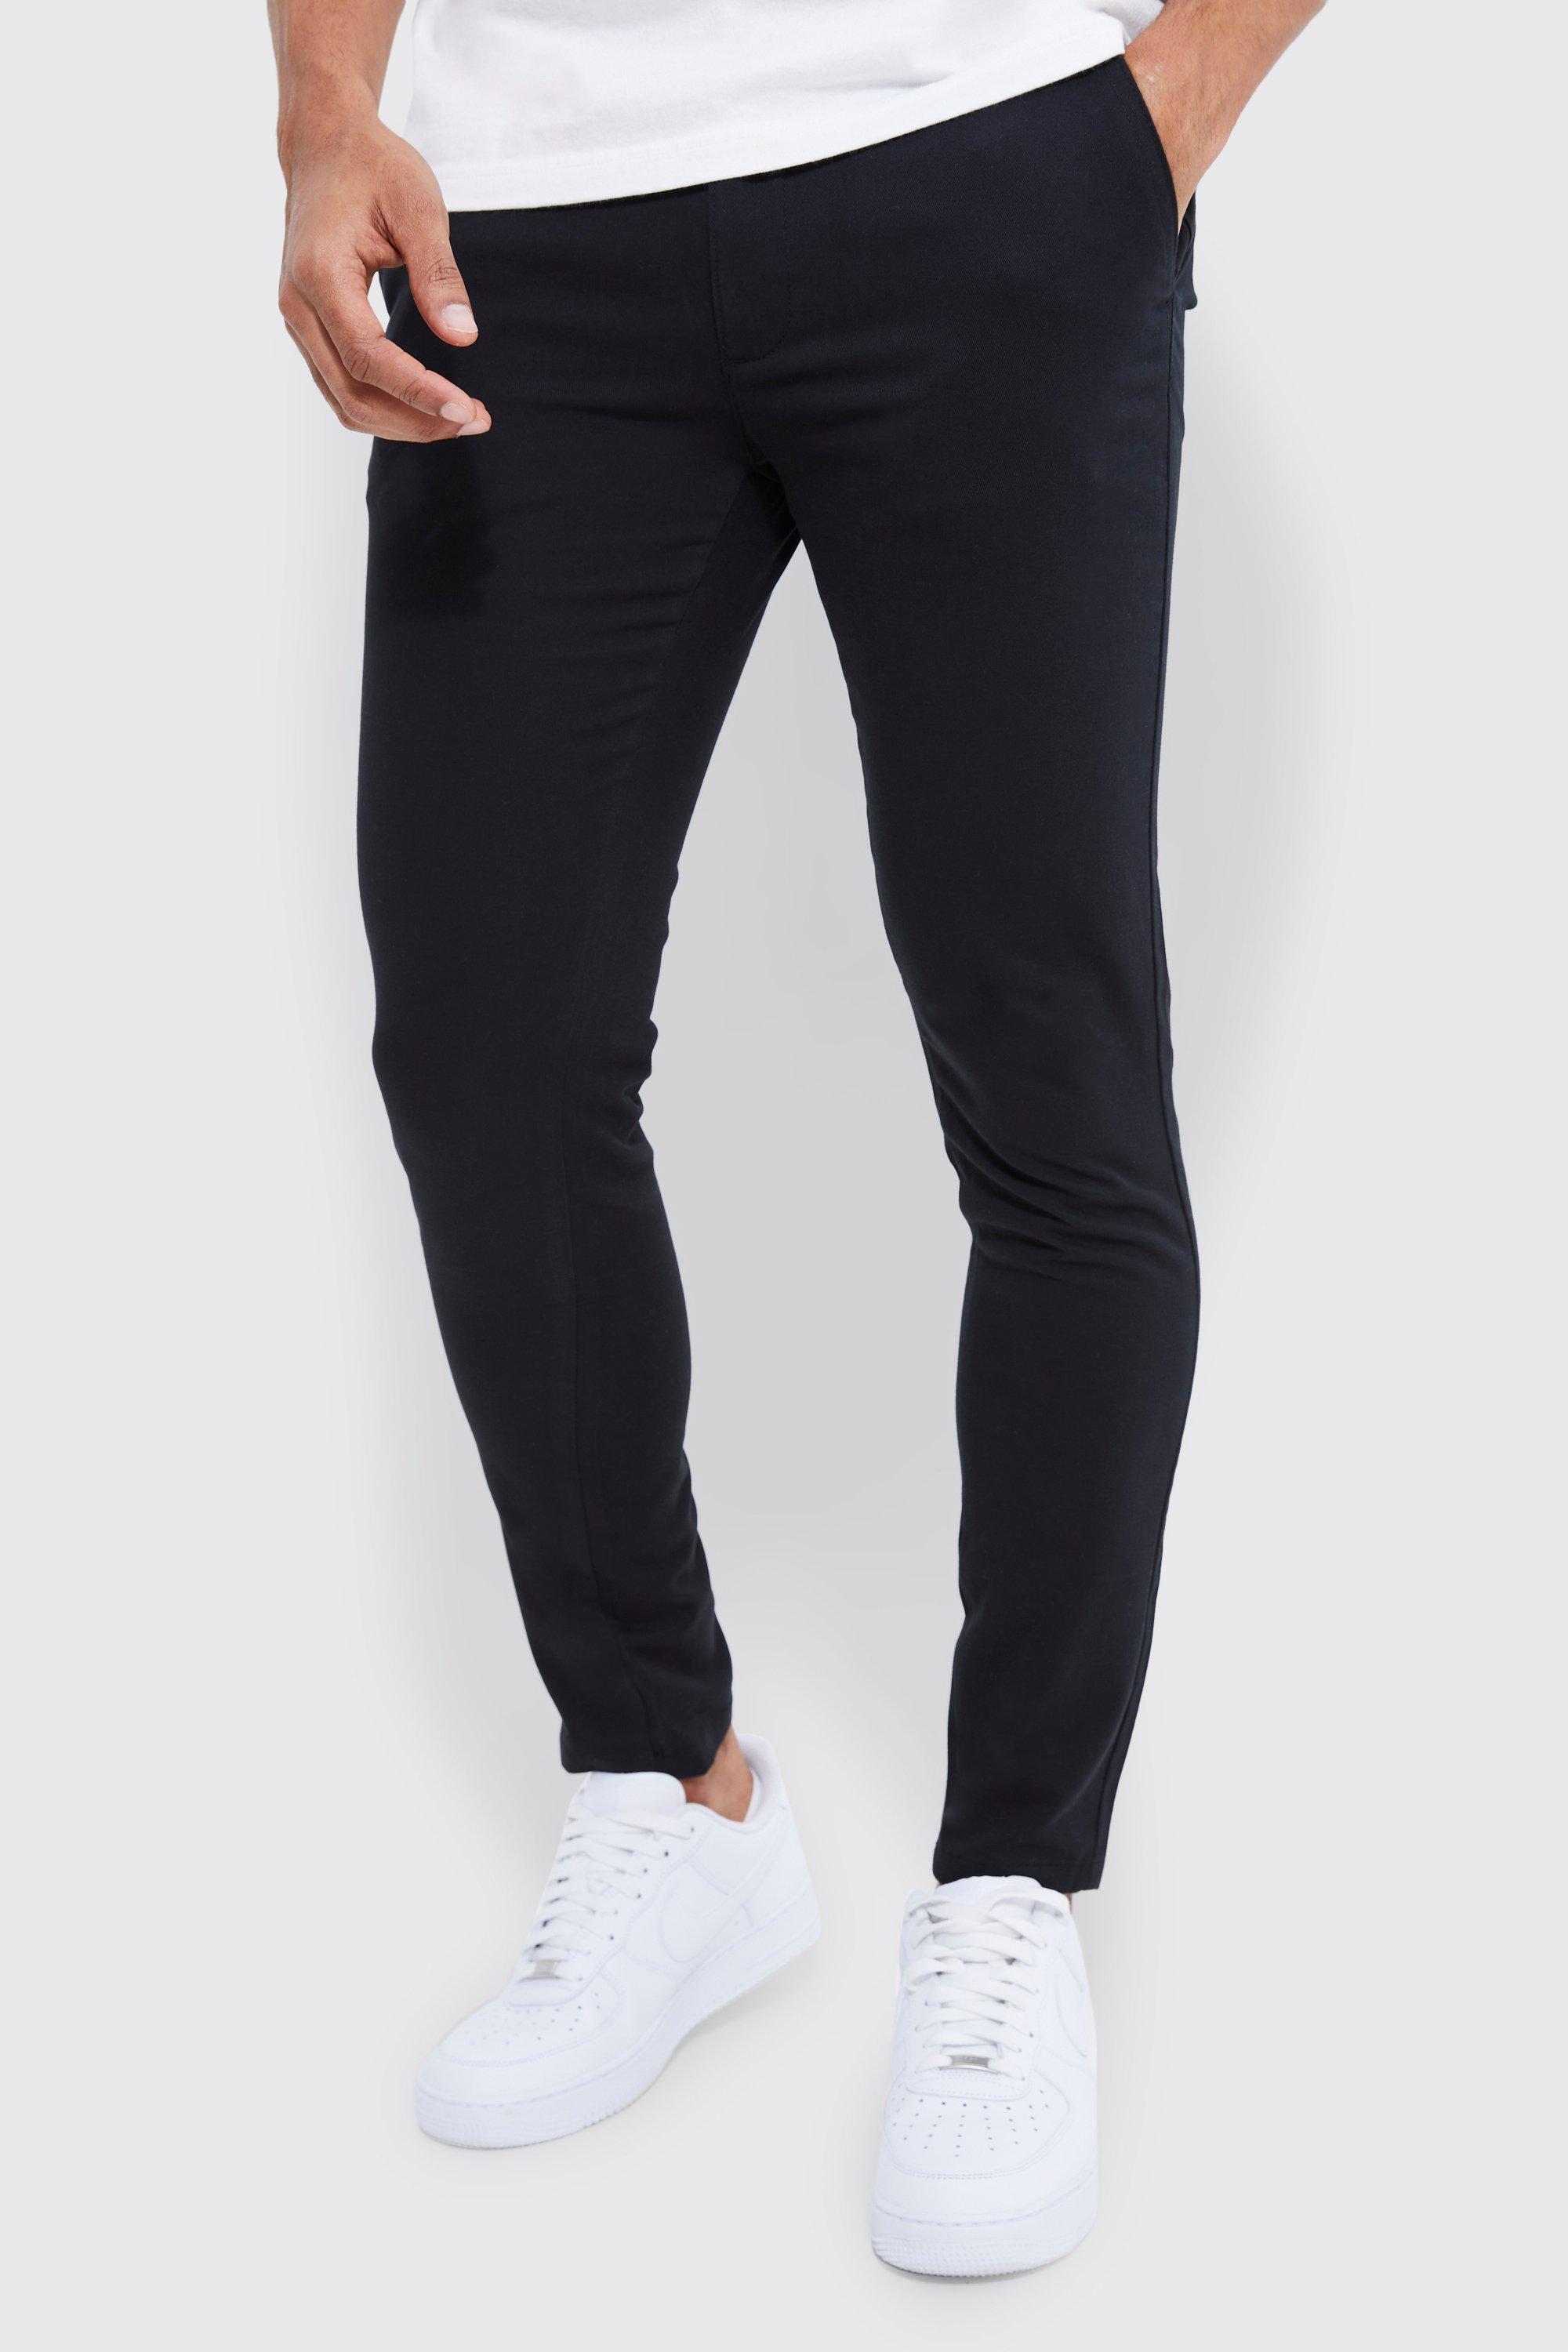 pantalon chino skinny homme - noir - 32r, noir